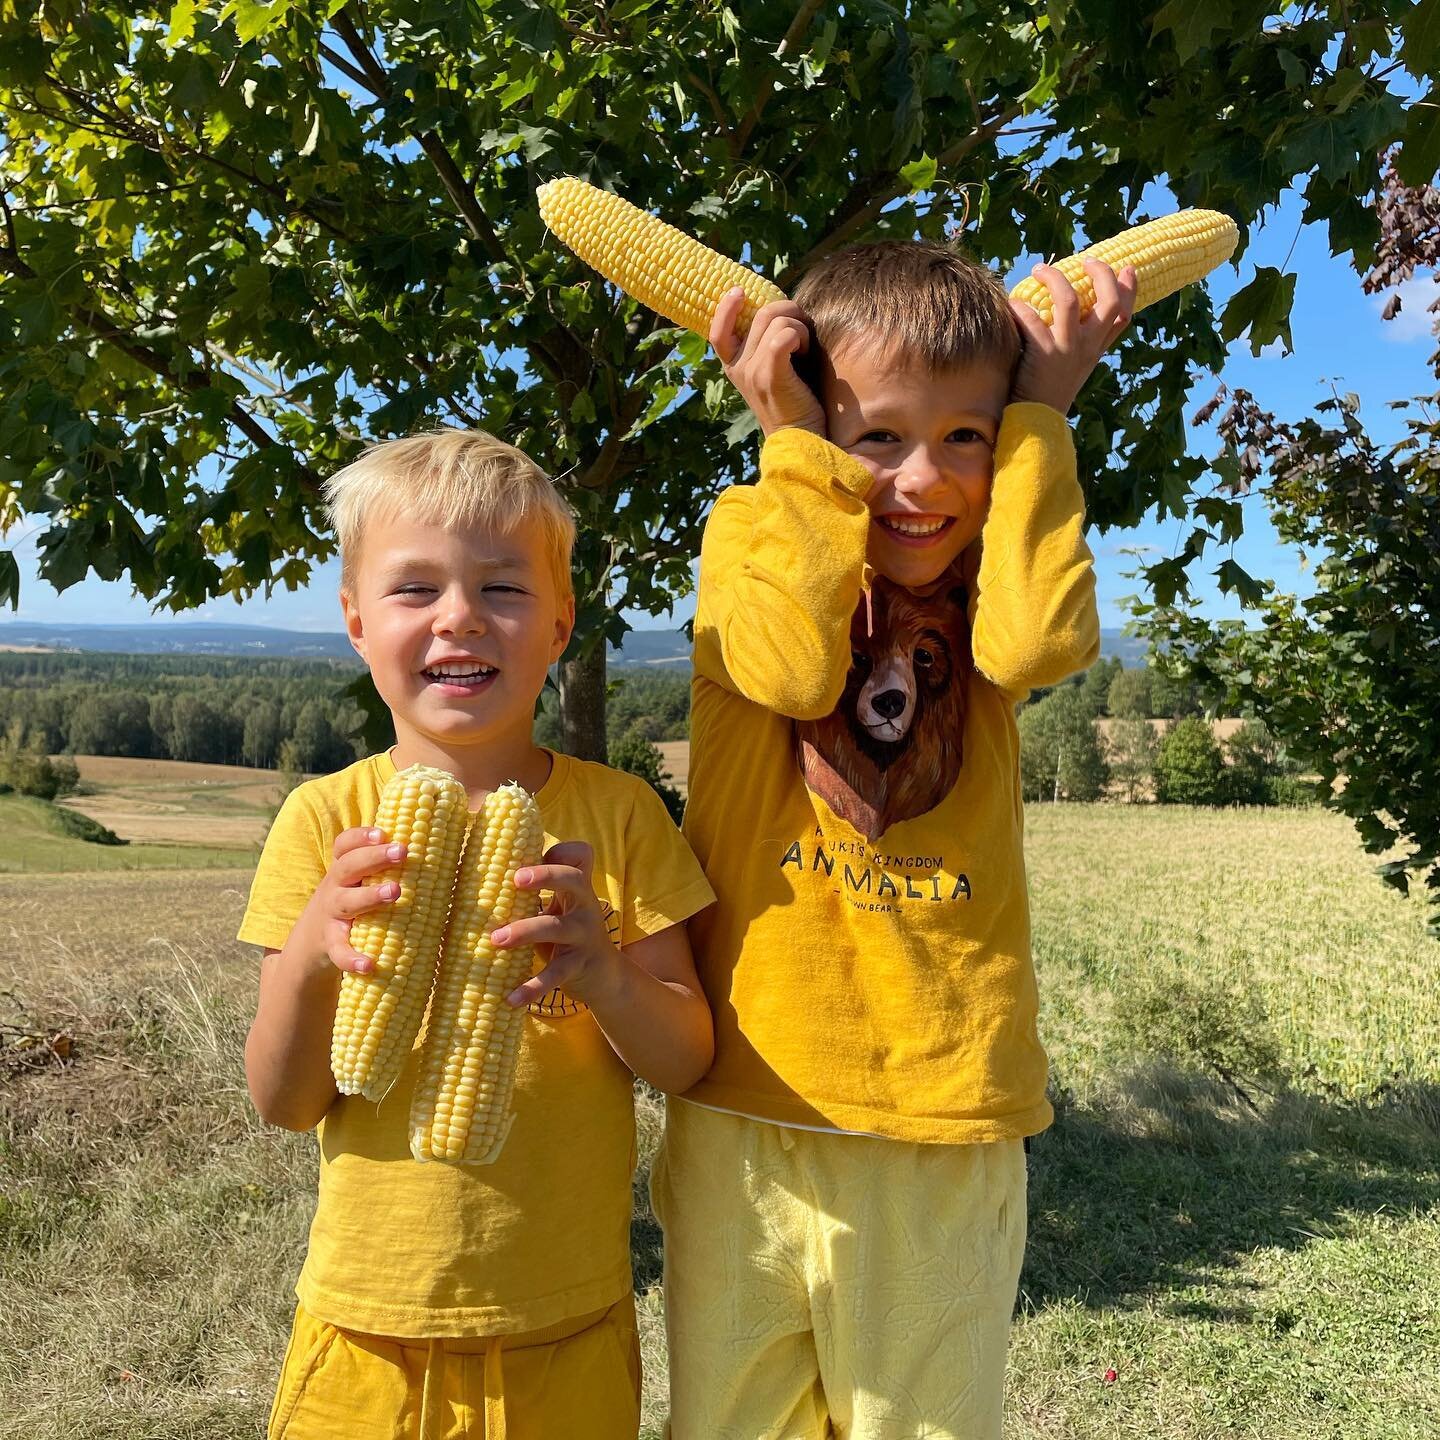 Kledd for anledningen! Disse to gule guttene koste seg med selvplukk av mais i g&aring;r. I dag har vi &aring;pen g&aring;rdsbutikk og selvplukk av mais fra kl 11-17. #mais #selvplukk #corn #g&aring;rdsbutikk #ringerike #holekommune #bj&oslash;rkeg&a